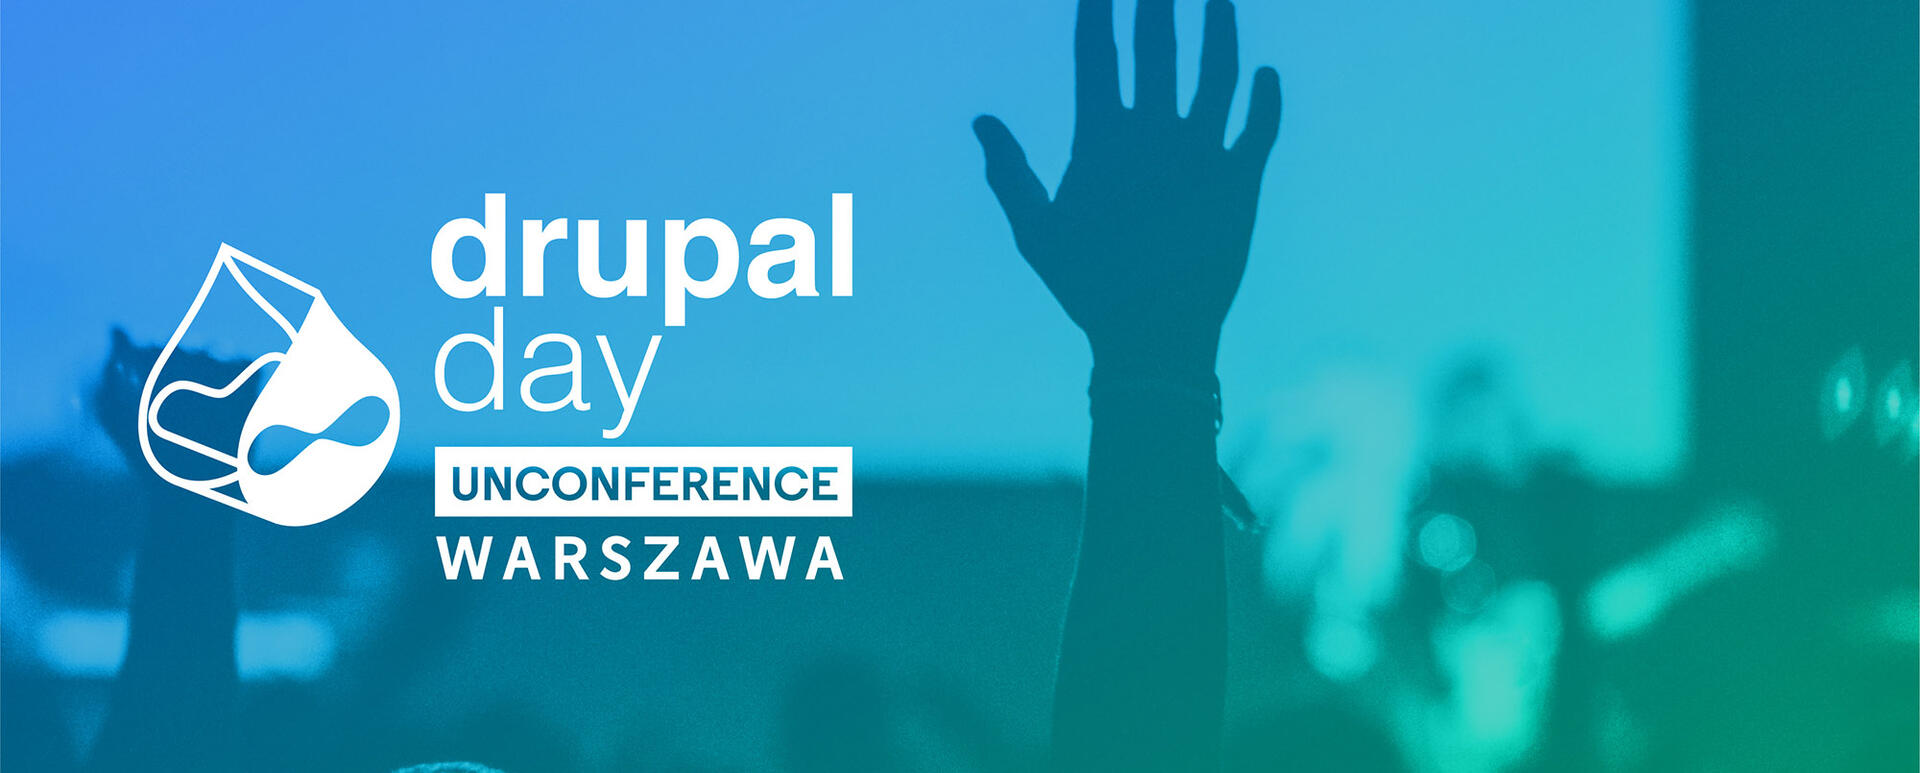 Zdjęcie główne Drupal Day Unconference Warszawa 2019